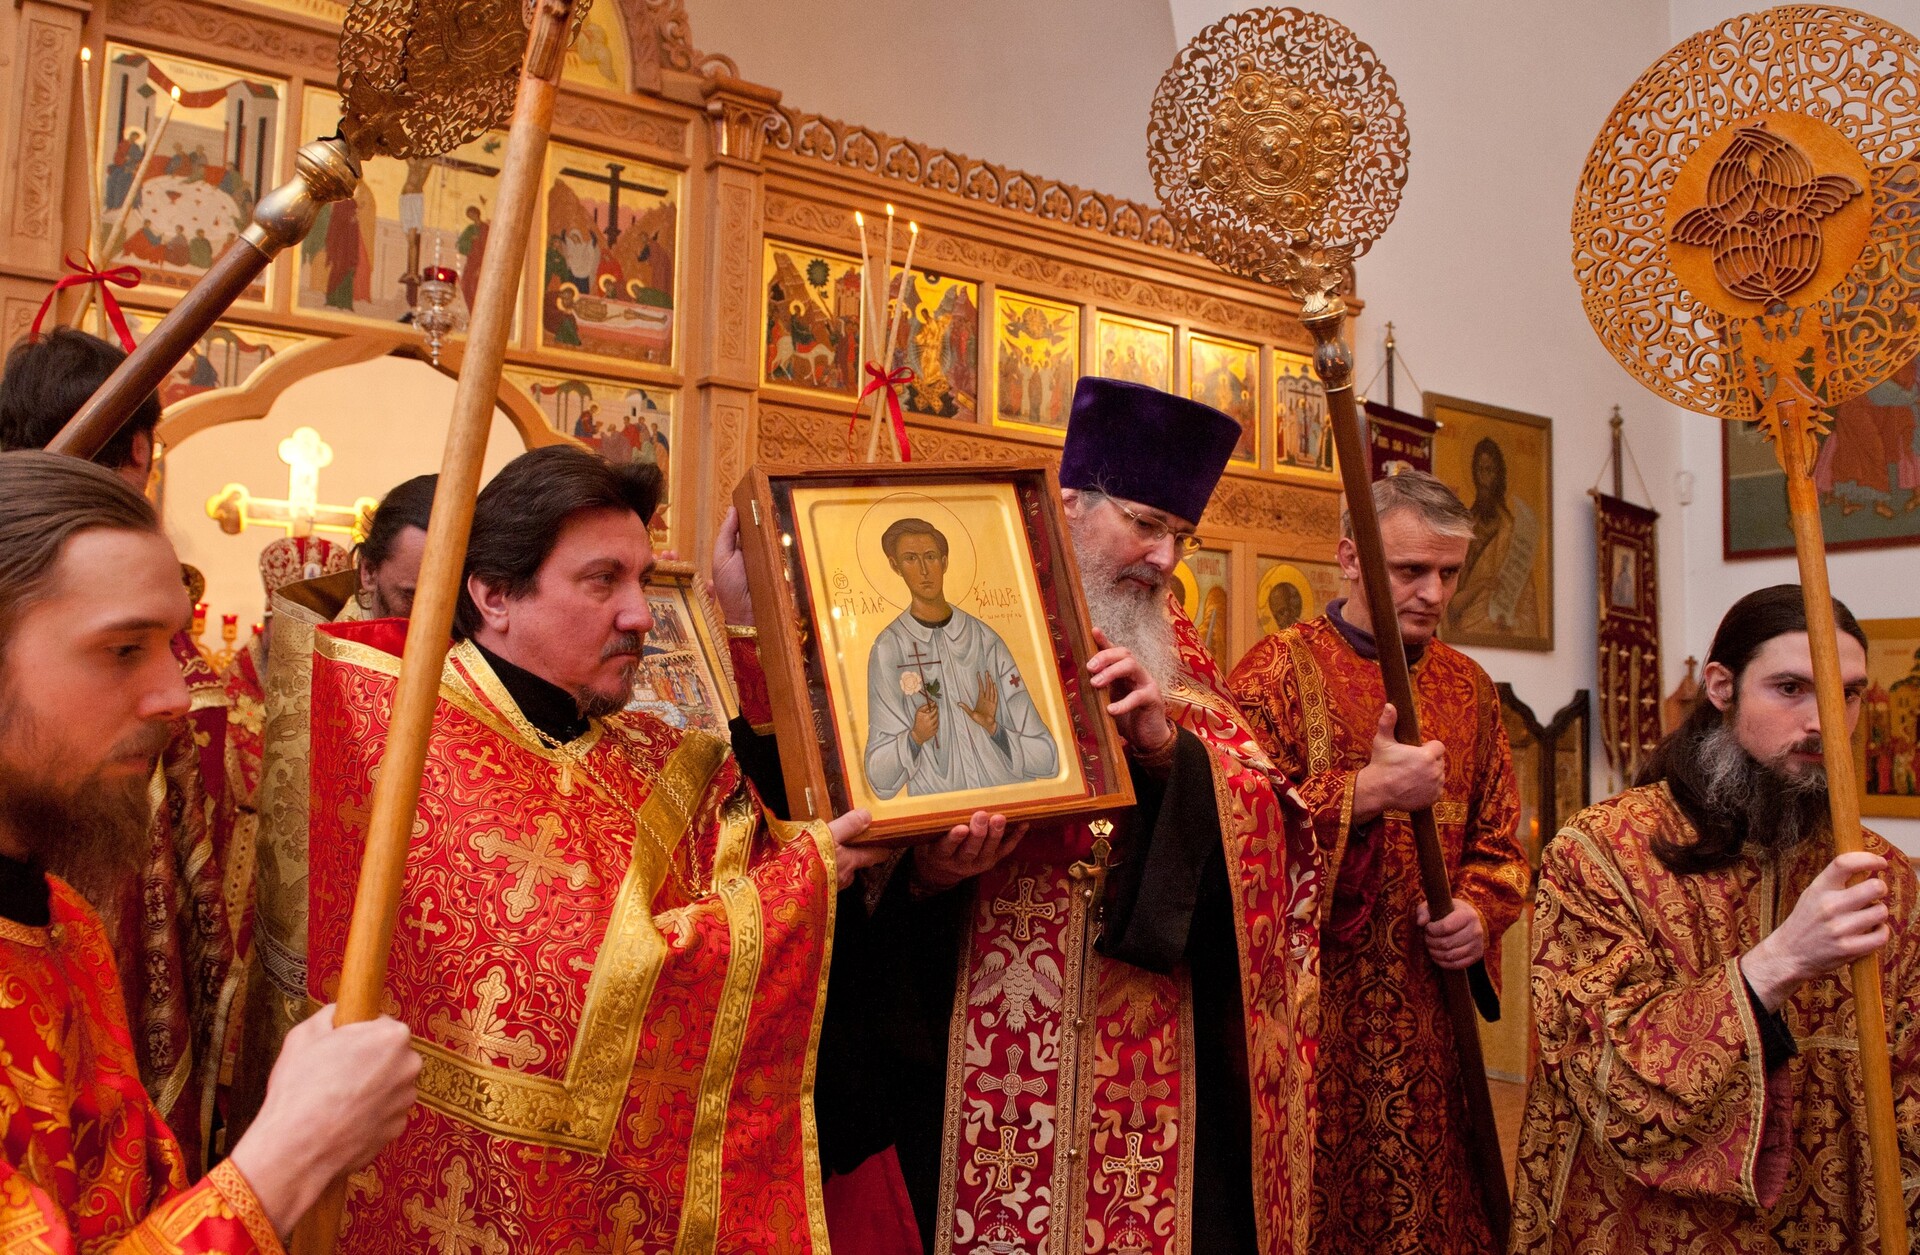 Ruski pravoslavni duhovnik drži ikono Aleksandra Schmorella v katedrali svetih novih mučencev in spovednikov Rusije v Münchnu, Nemčiji, 4. februarja 2012. Nemško-ruska pravoslavna cerkev je v Rusiji rojenega Schmorella proslavila kot novega mučenca.